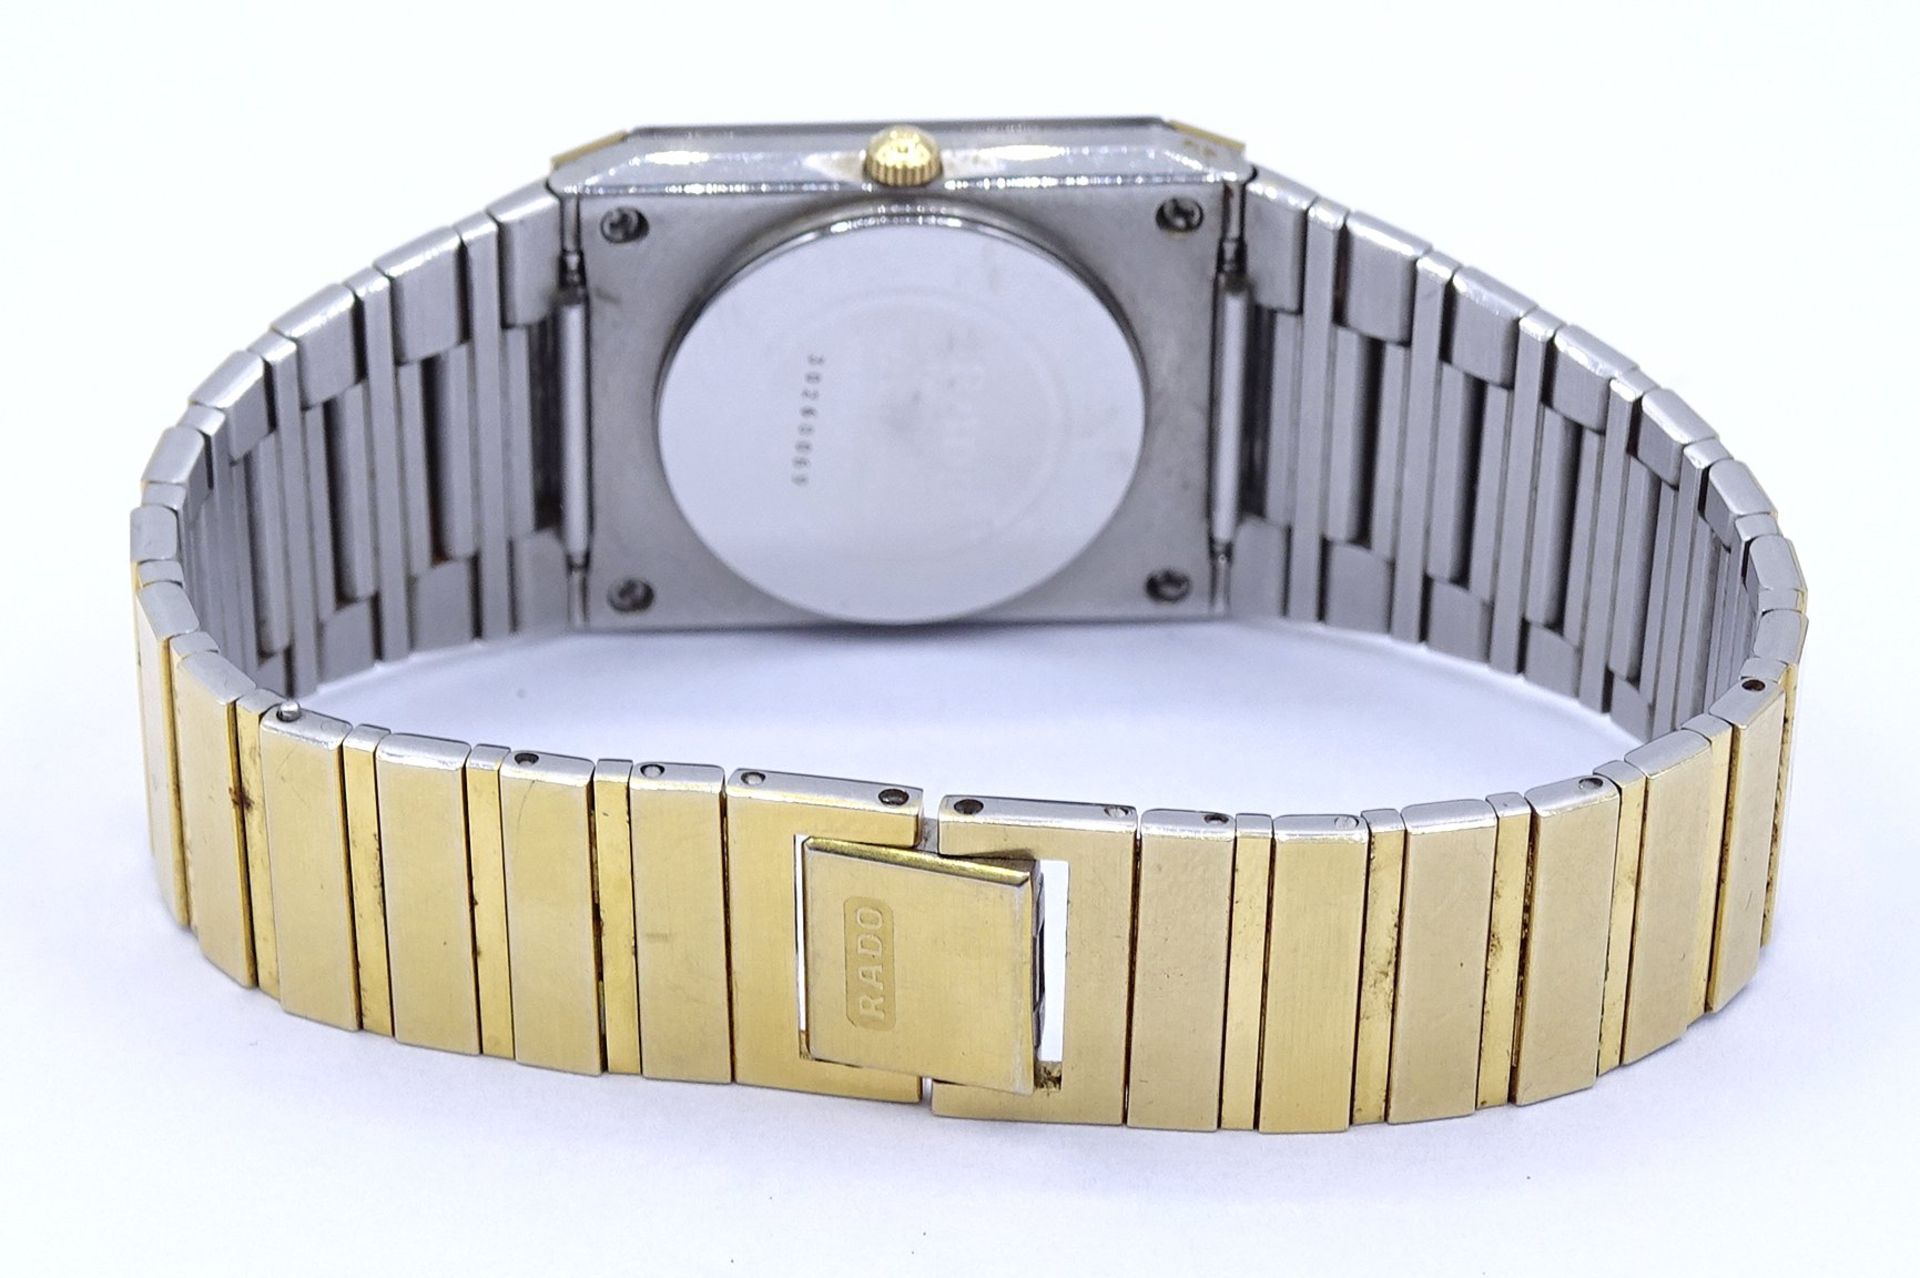 Armbanduhr "Rado", Diastar, Quartzwerk, Gehäuse 26x32mm, Funktion nicht überprüft - Bild 3 aus 4